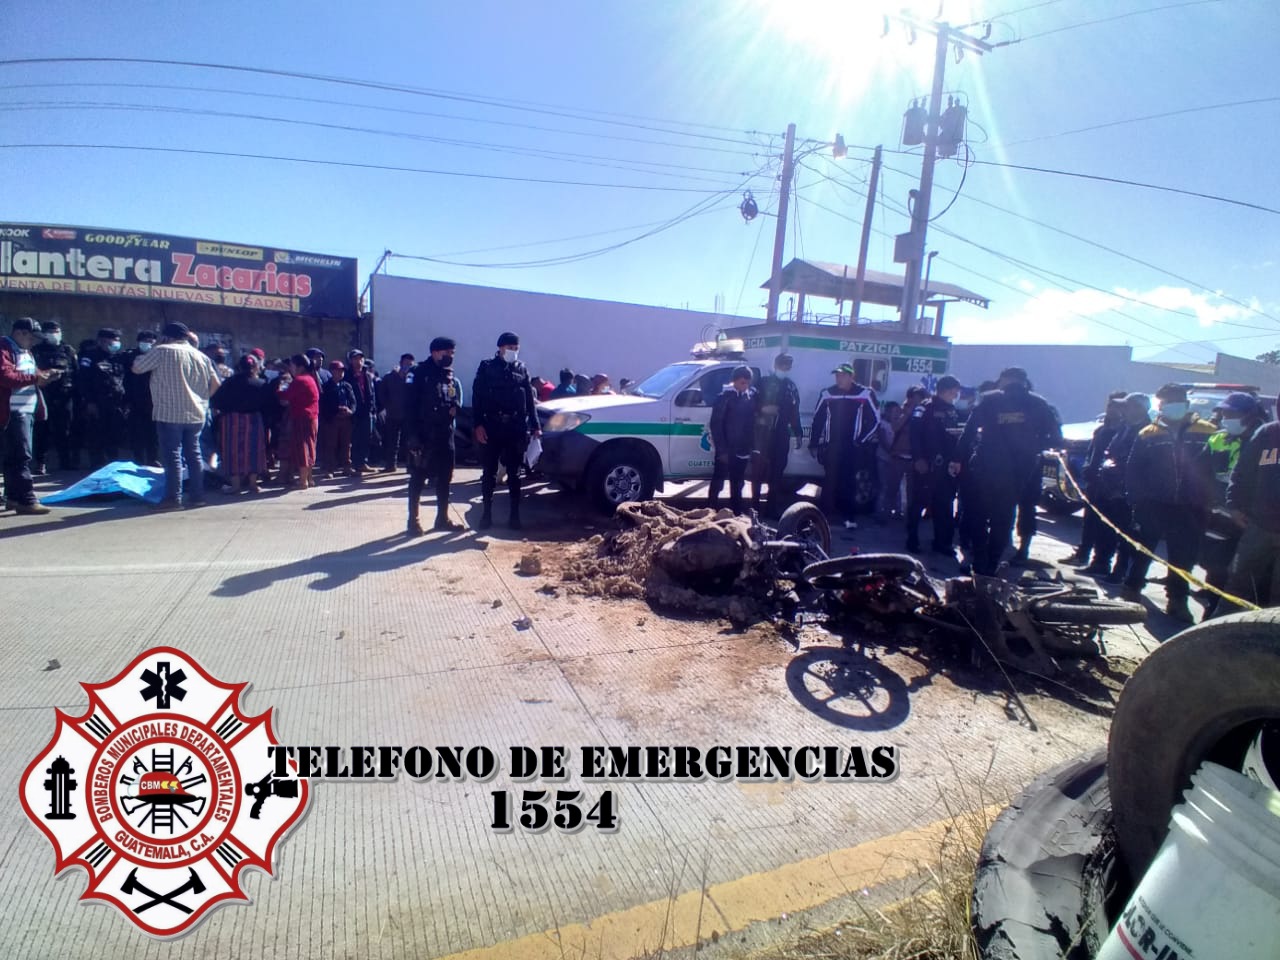 Dos motoristas chocaron en el km 75.5 de la ruta Interamericana, en Patzicía, Chimaltenango. (Foto Prensa Libre: CBMD)